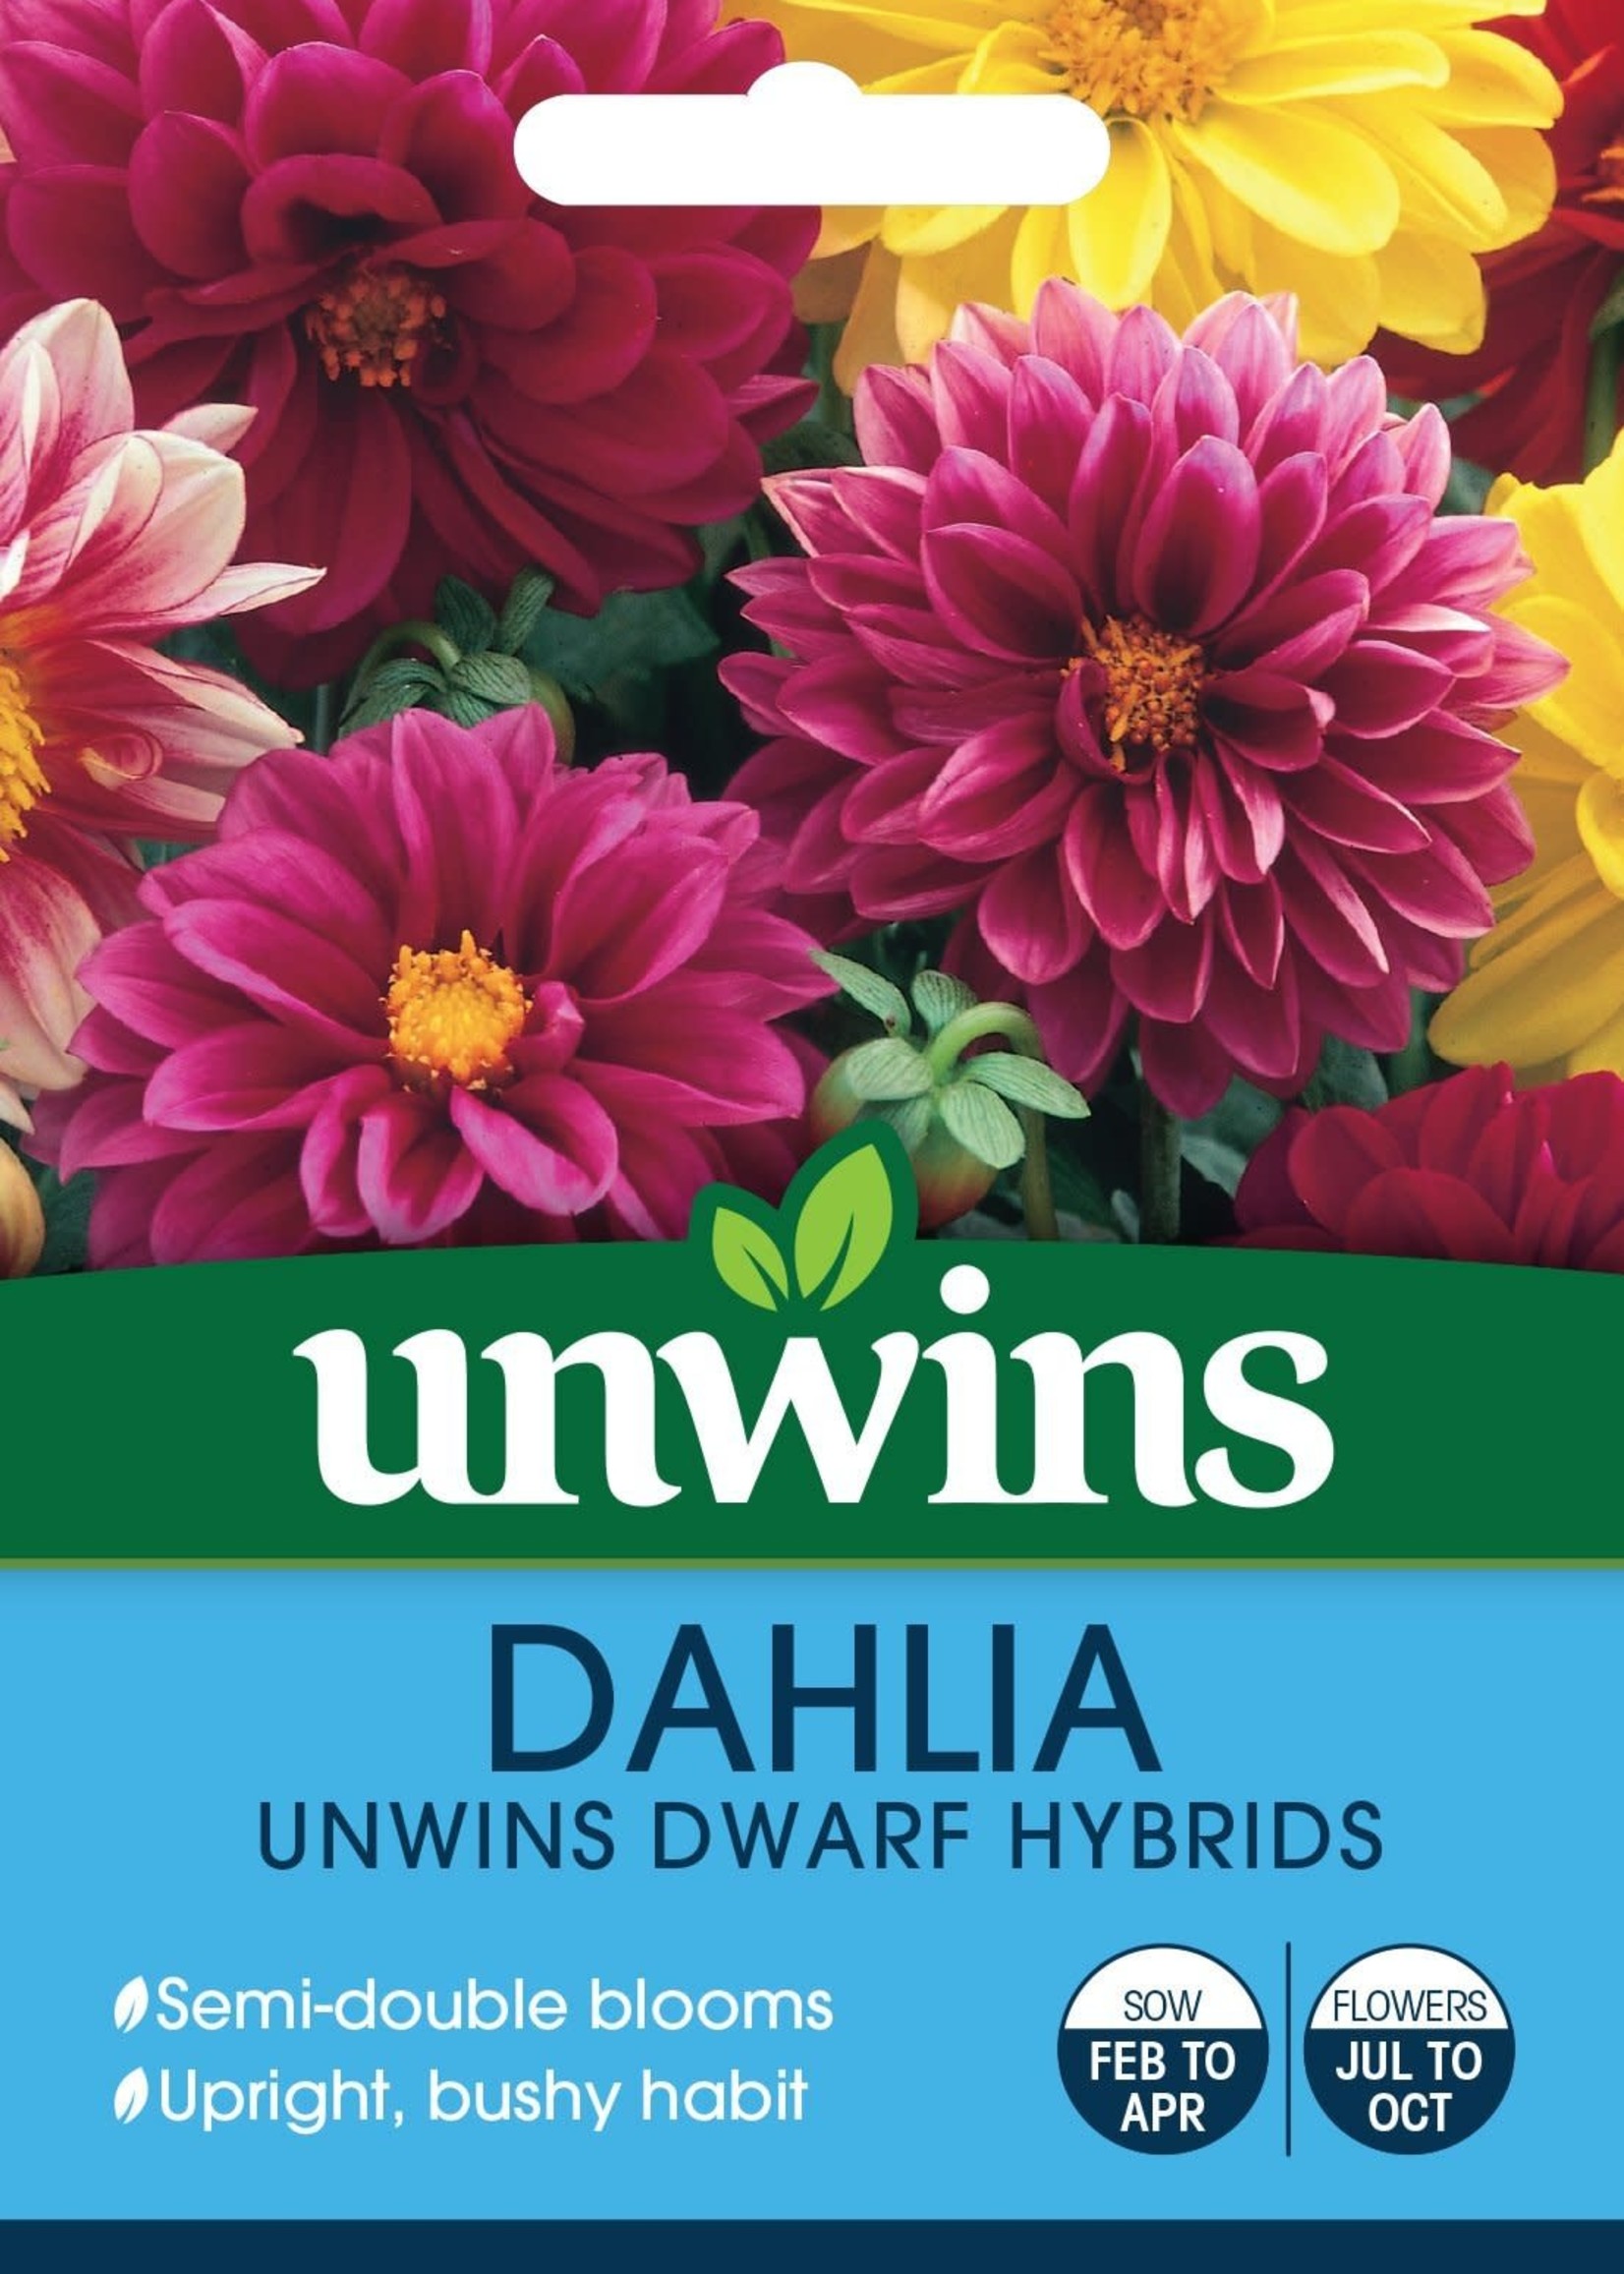 Unwins Dahlia - Unwins Dwarf Hybrids